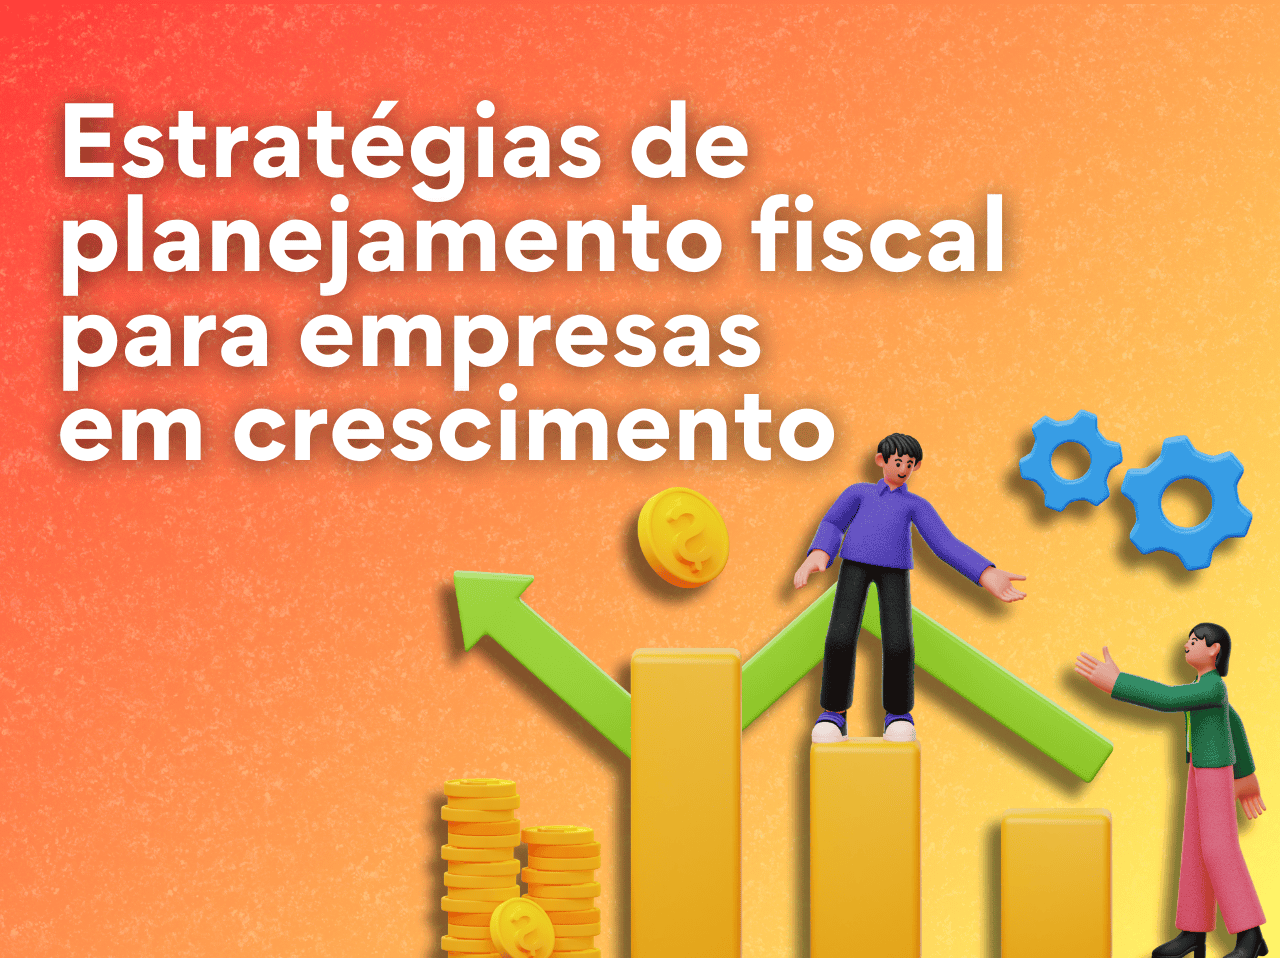 You are currently viewing Estratégias de planejamento fiscal para empresas em crescimento